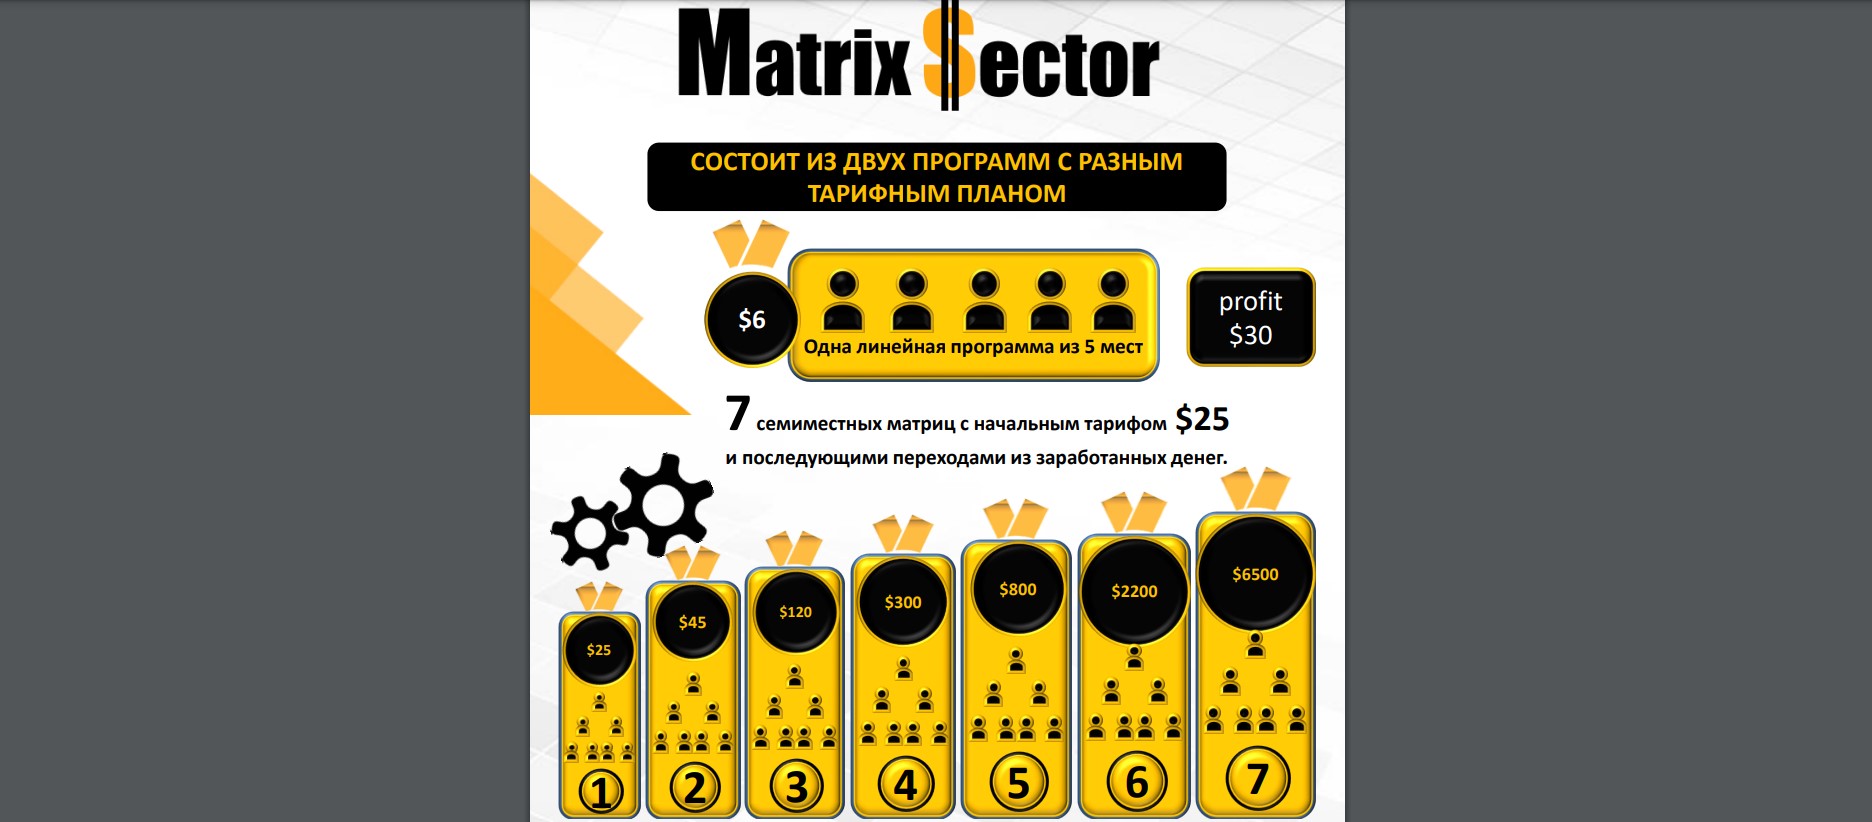 Matrix Sector